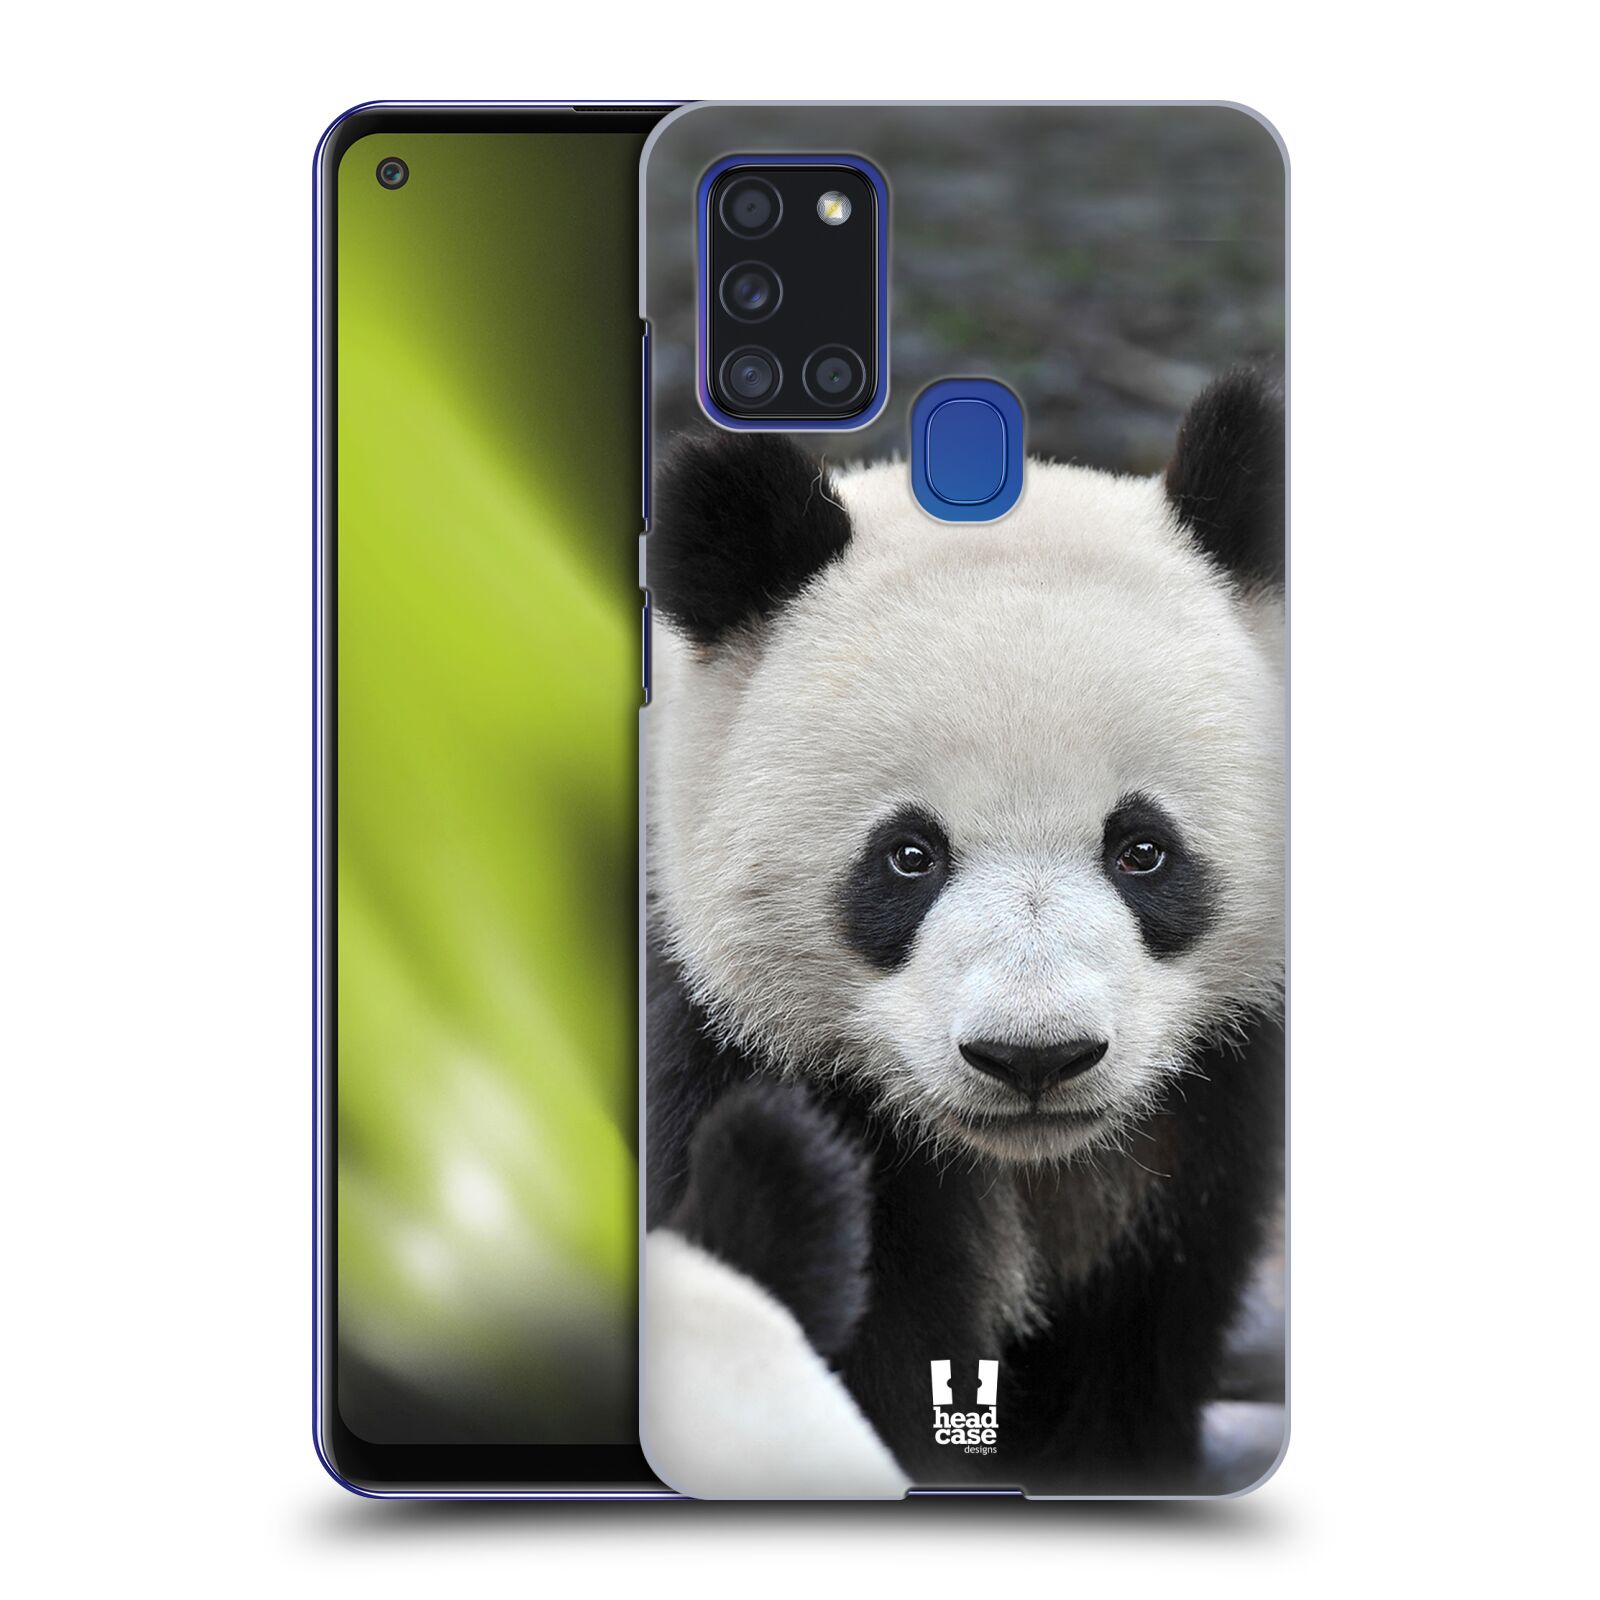 Zadní obal pro mobil Samsung Galaxy A21s - HEAD CASE - Svět zvířat medvěd panda